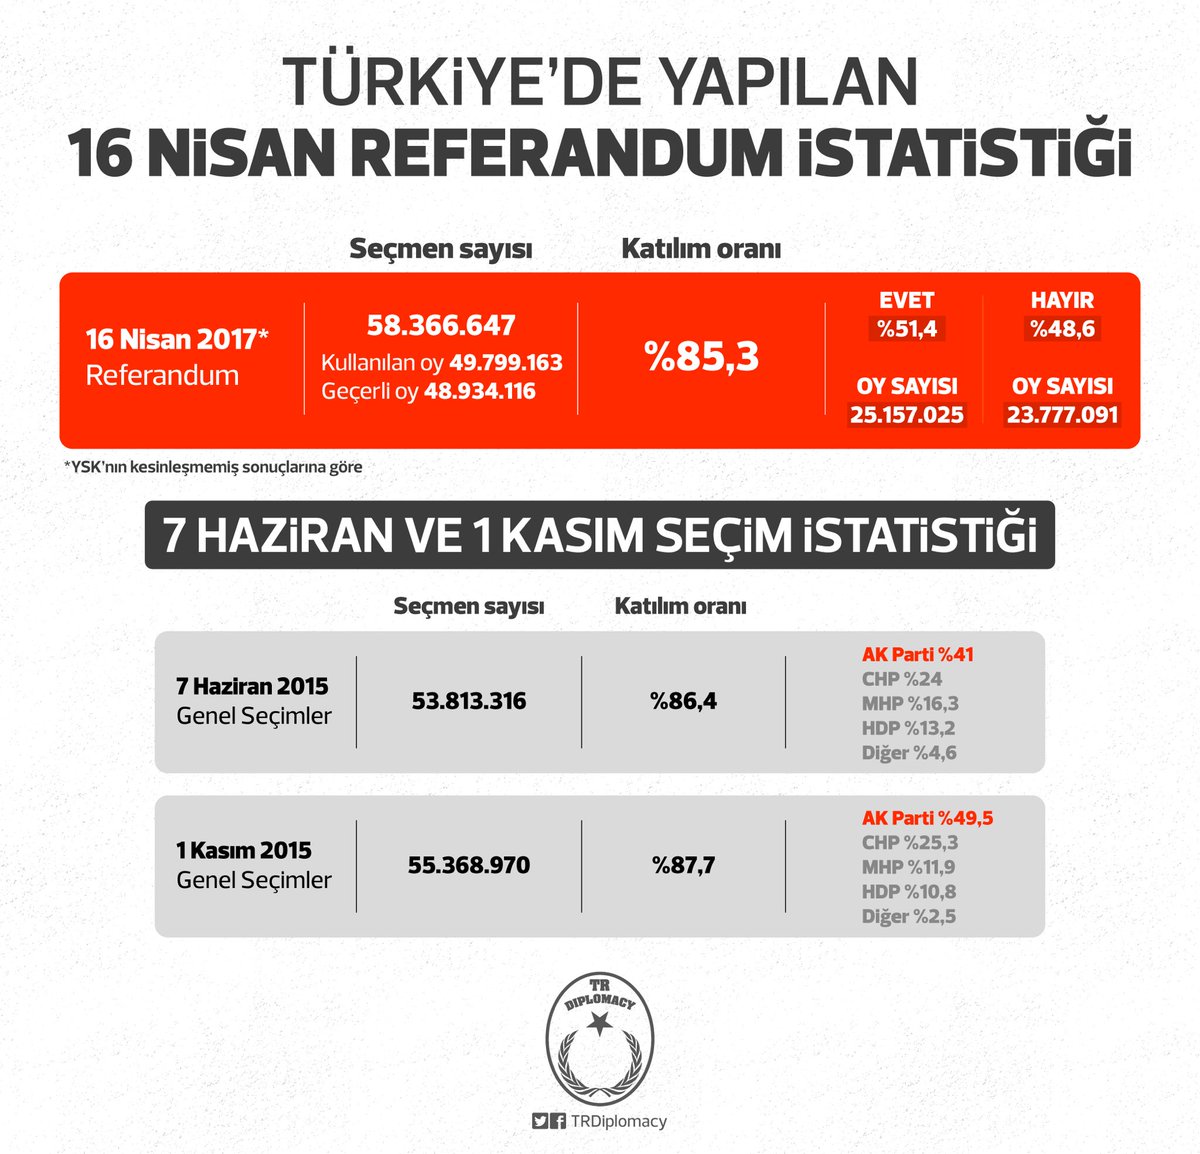 Türkiye'de Yapılan 16 Nisan Referandum İstatistiği